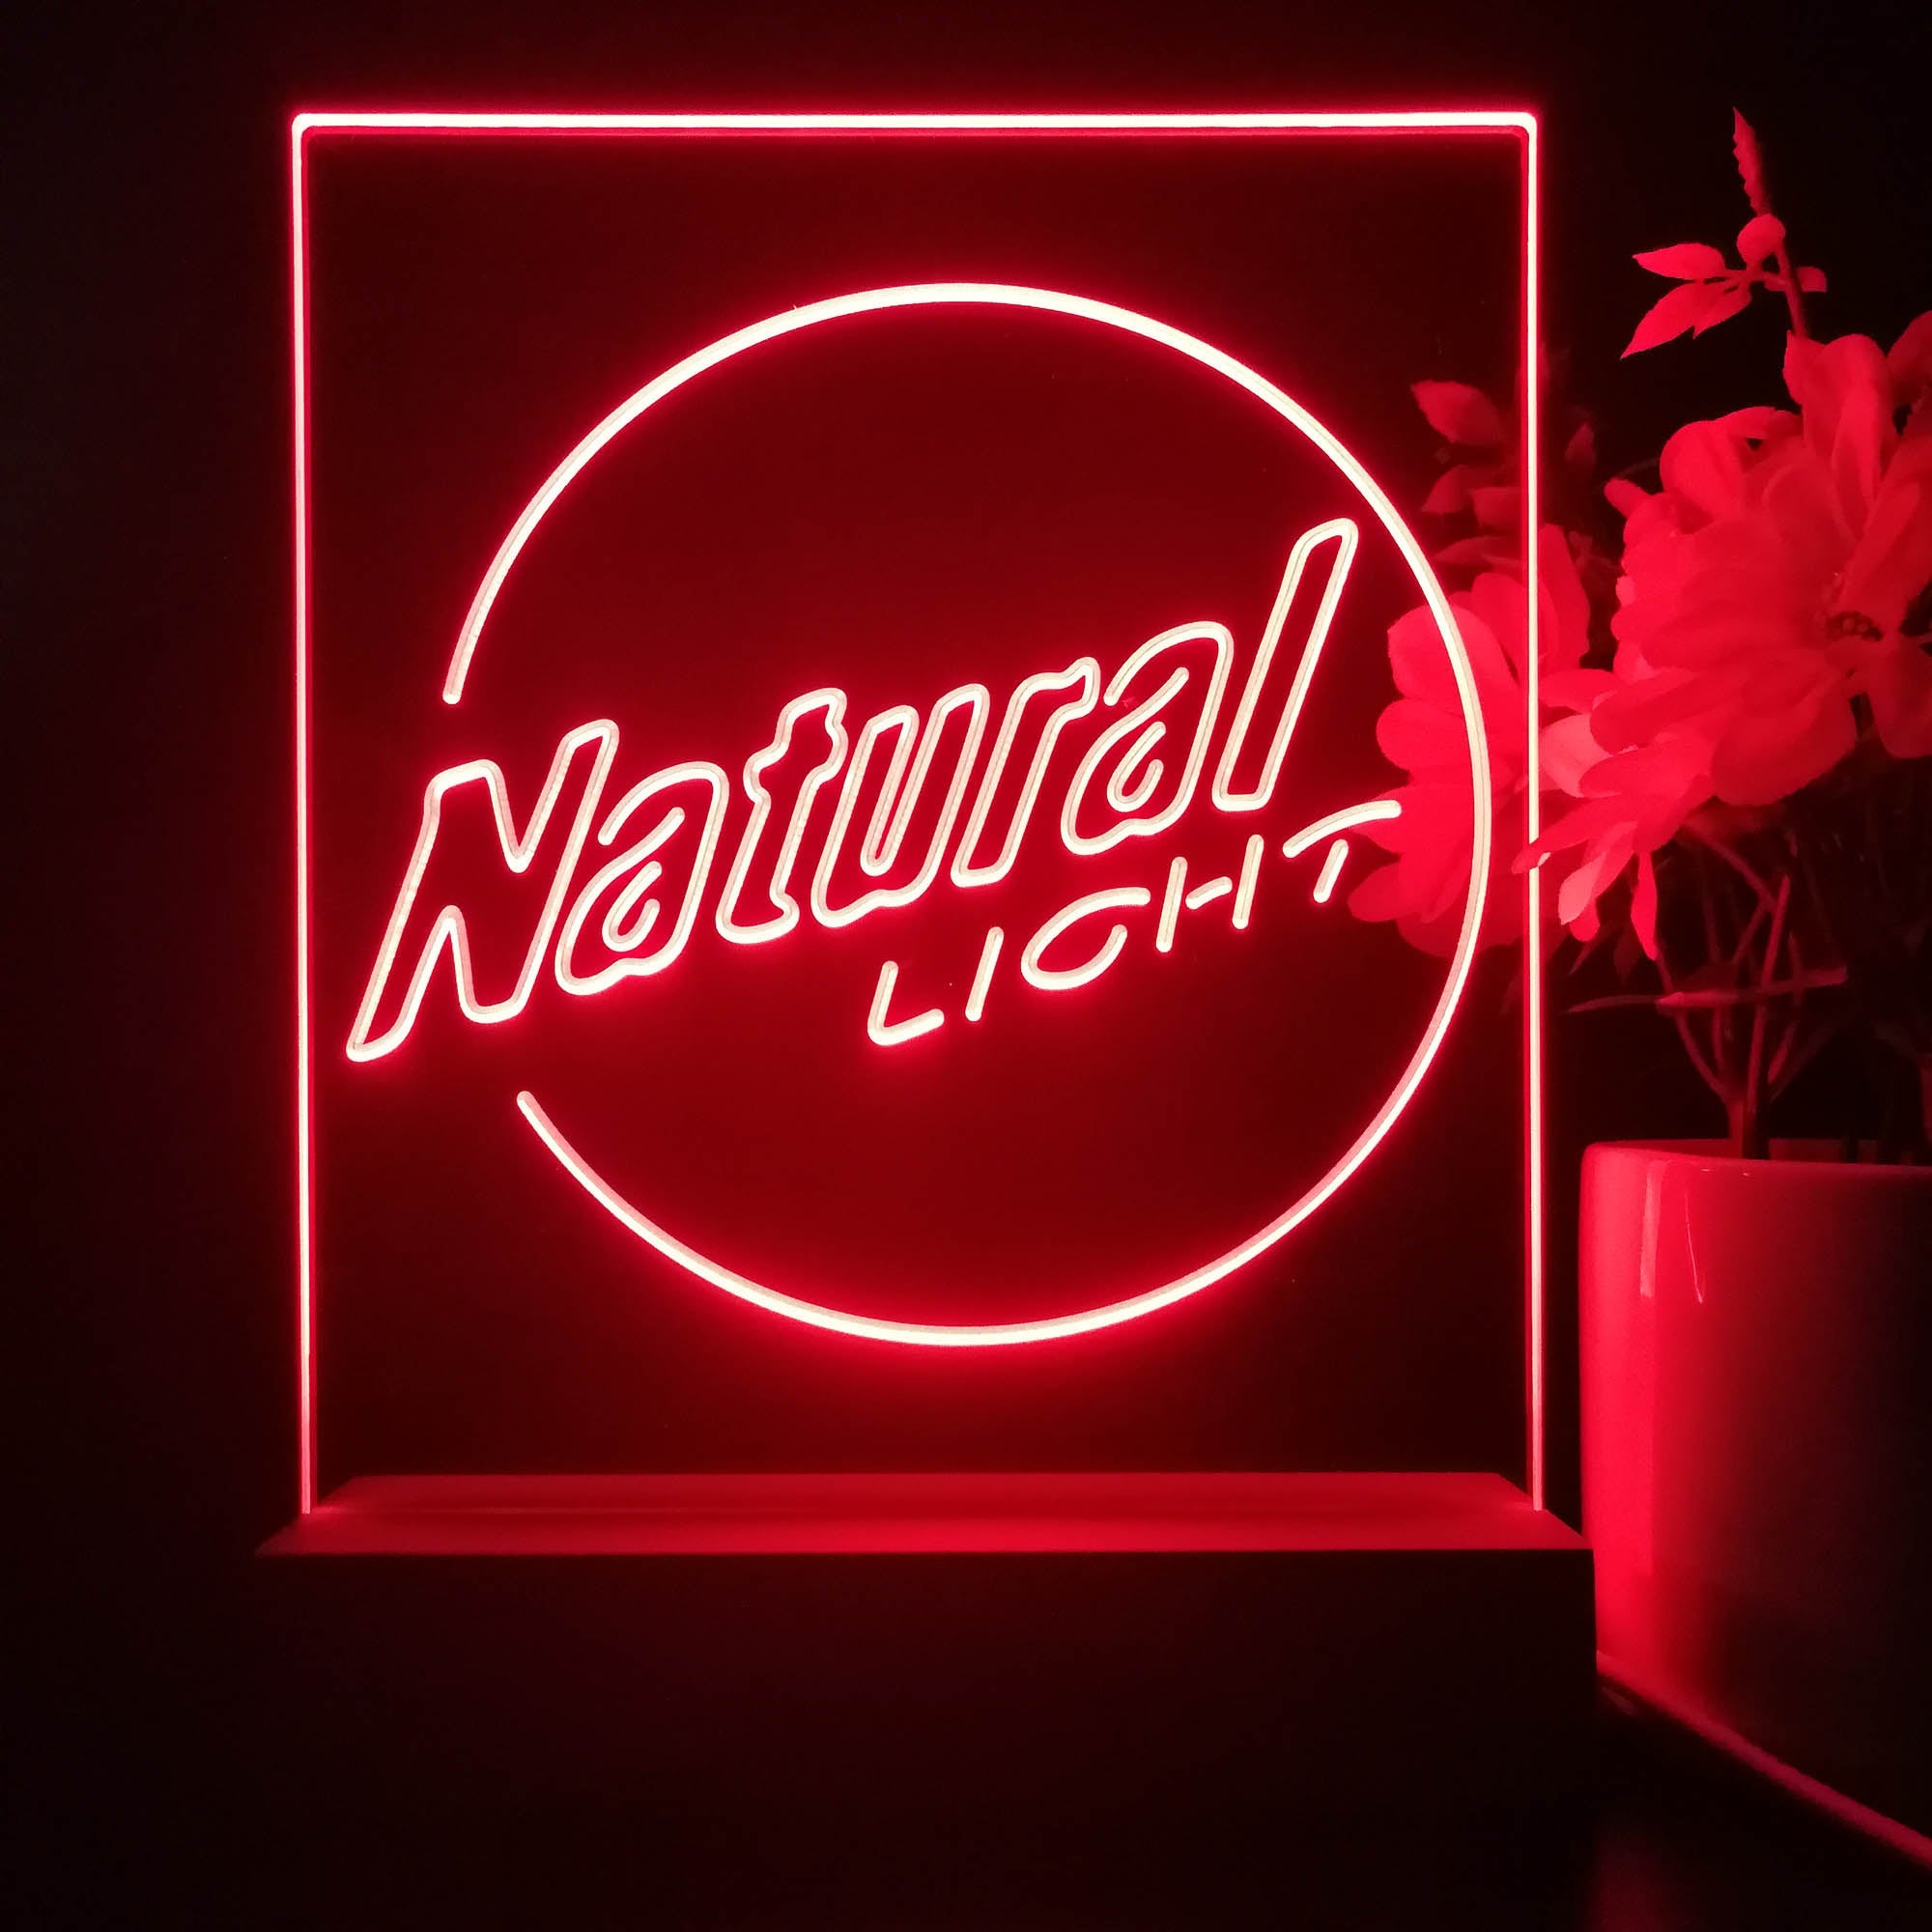 Natural Light Circle Bar 3D Illusion Night Light Desk Lamp